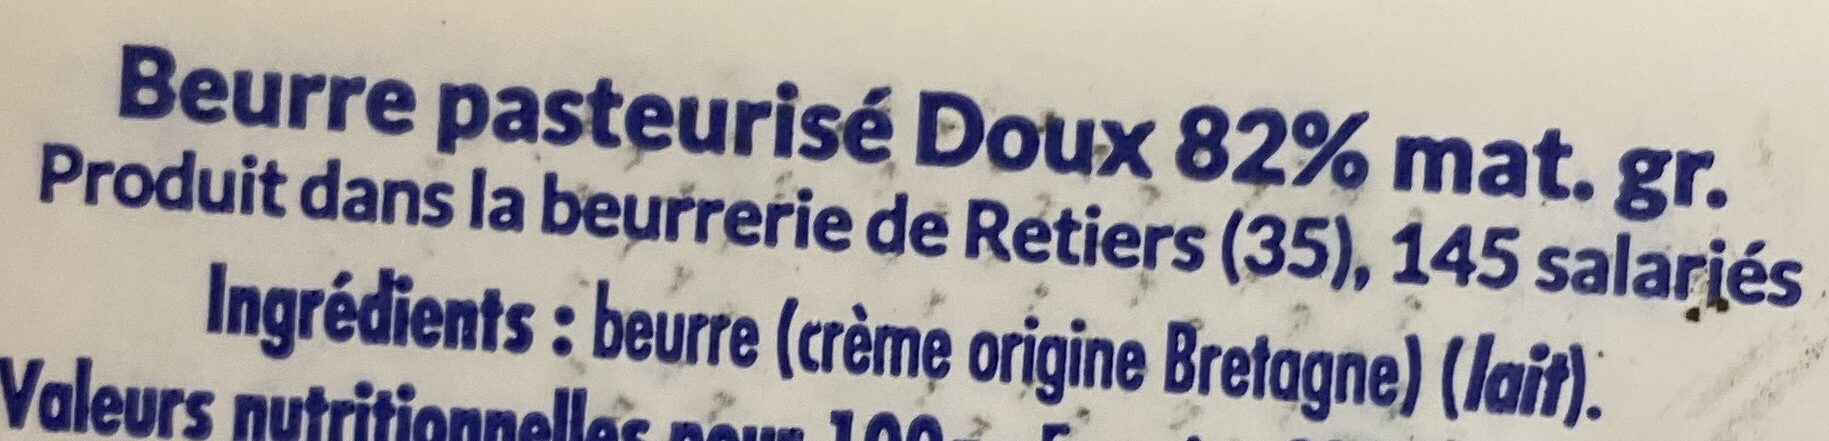 Beurre moulé breton doux - Ingredients - fr